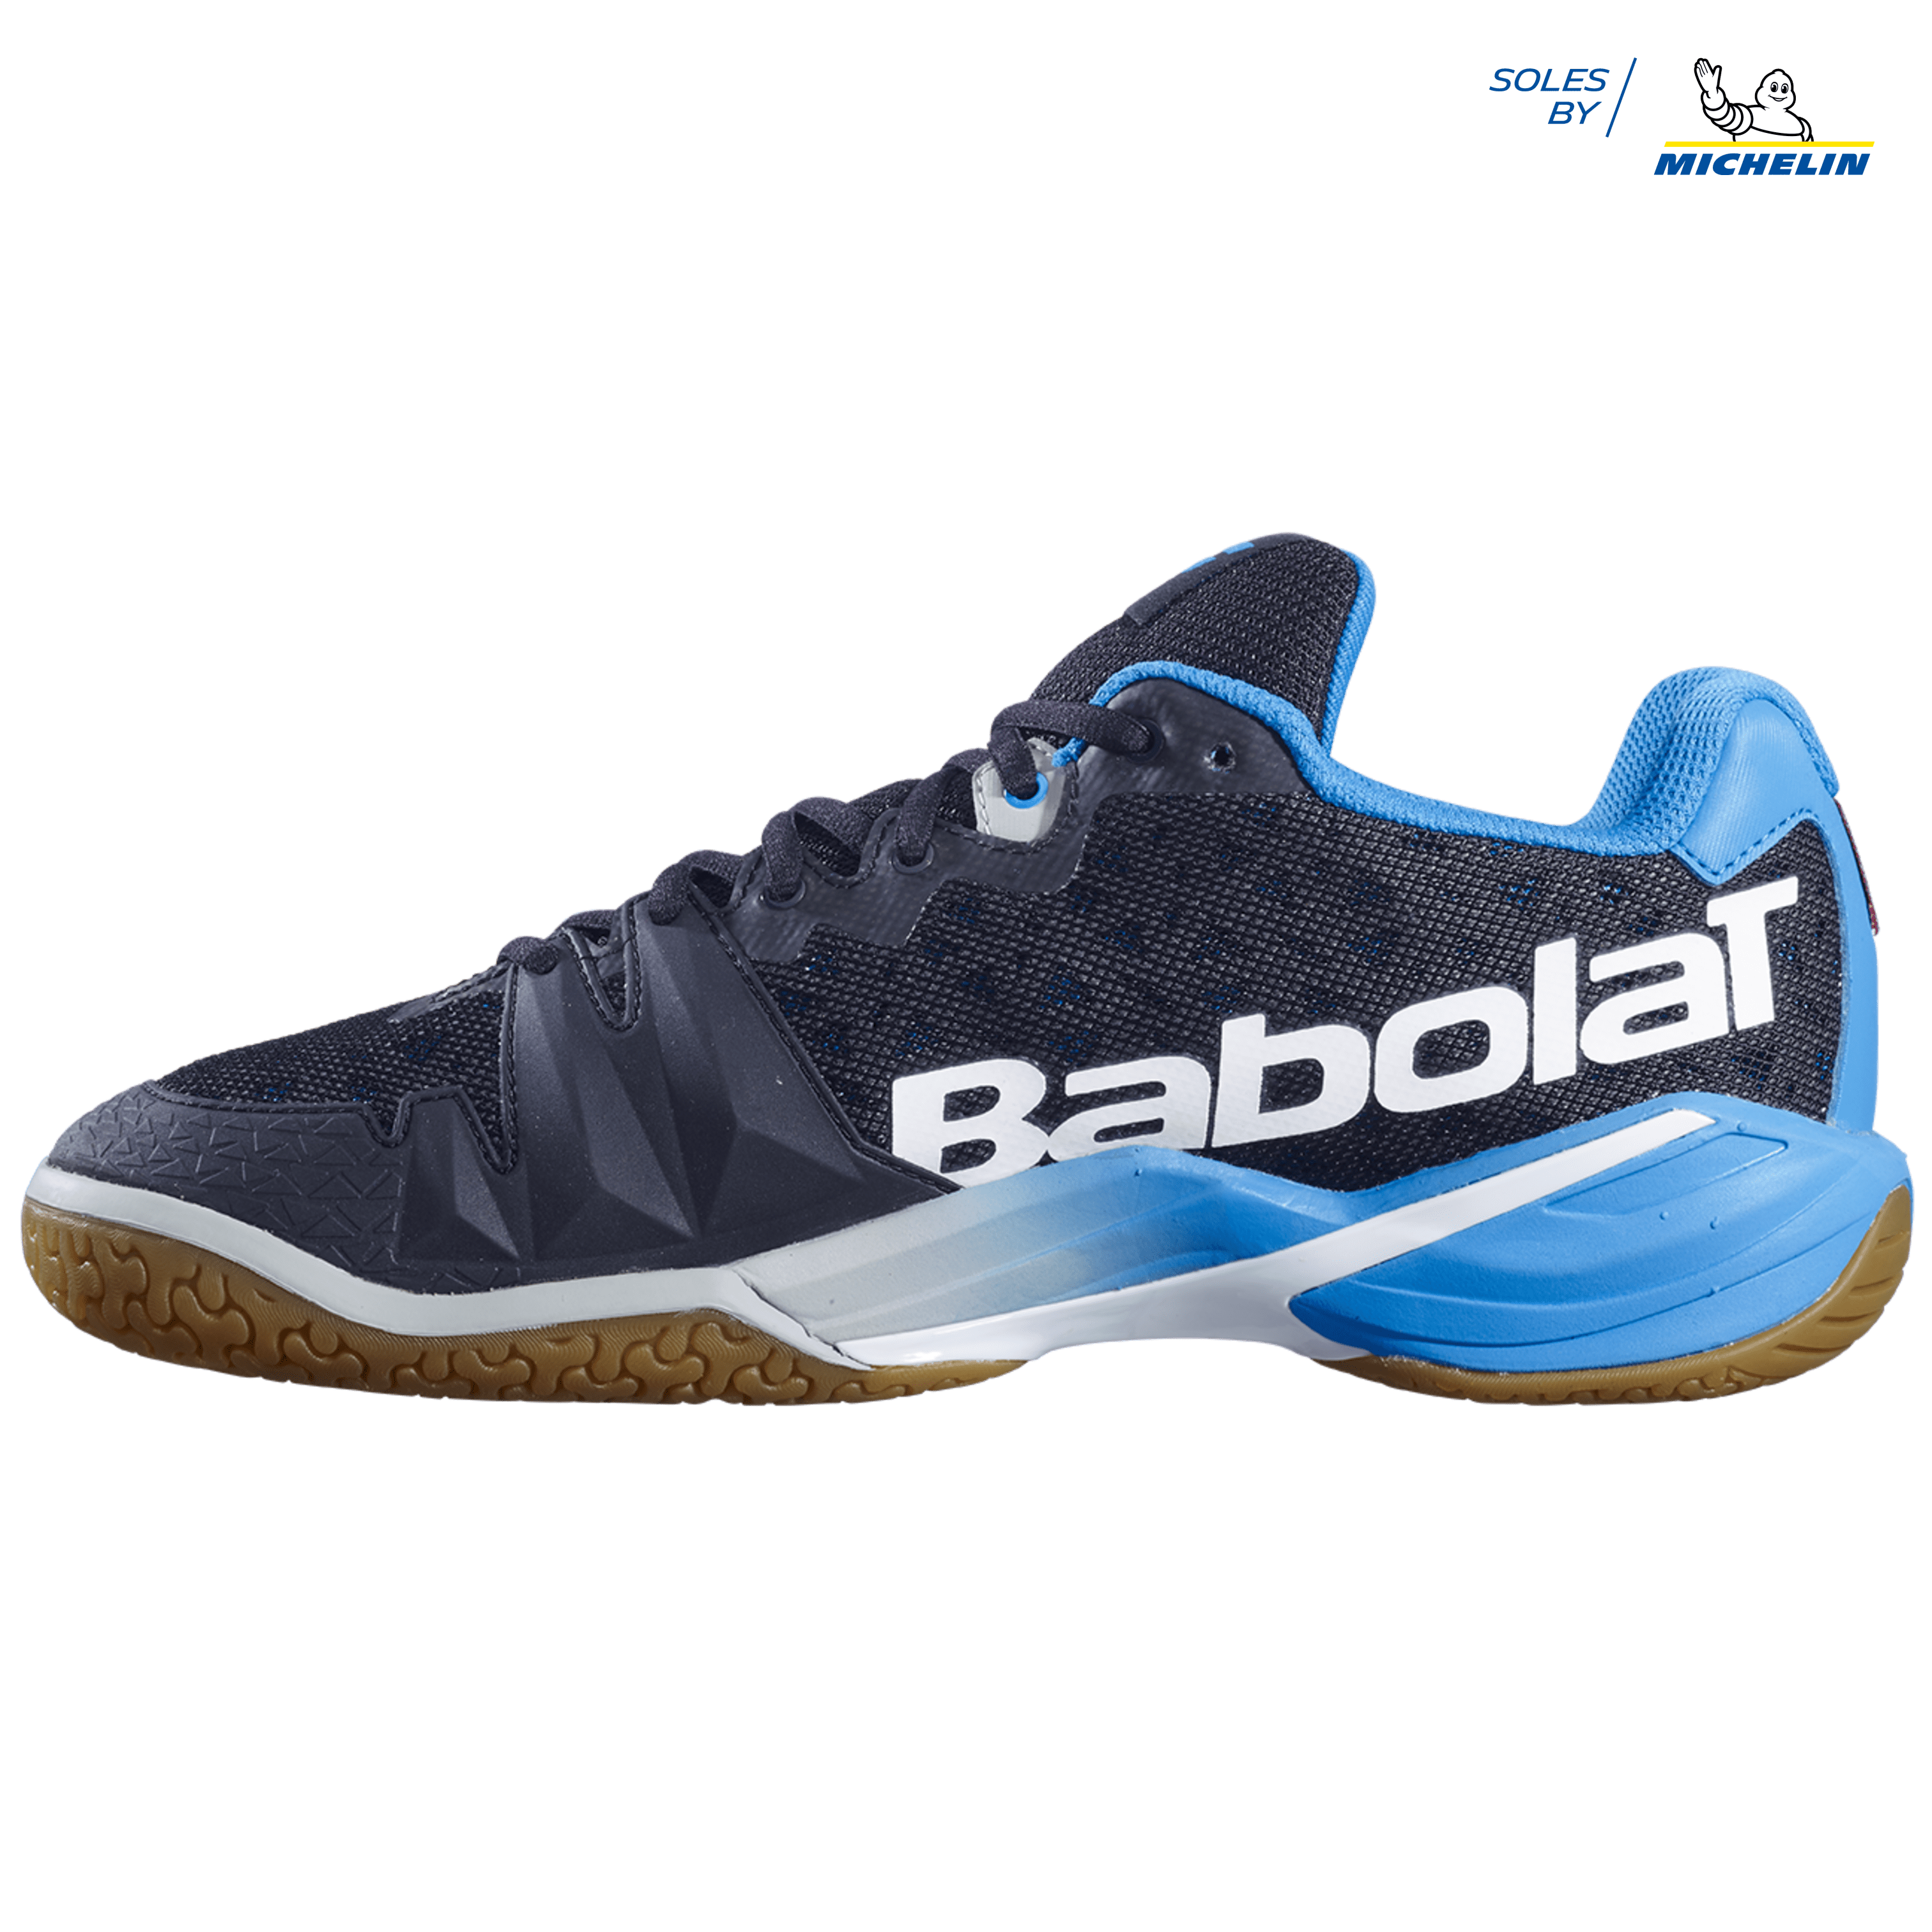 Babolat Shadow Tour Men's Badminton Shoes Sports Athletic Blue 30S1688233 